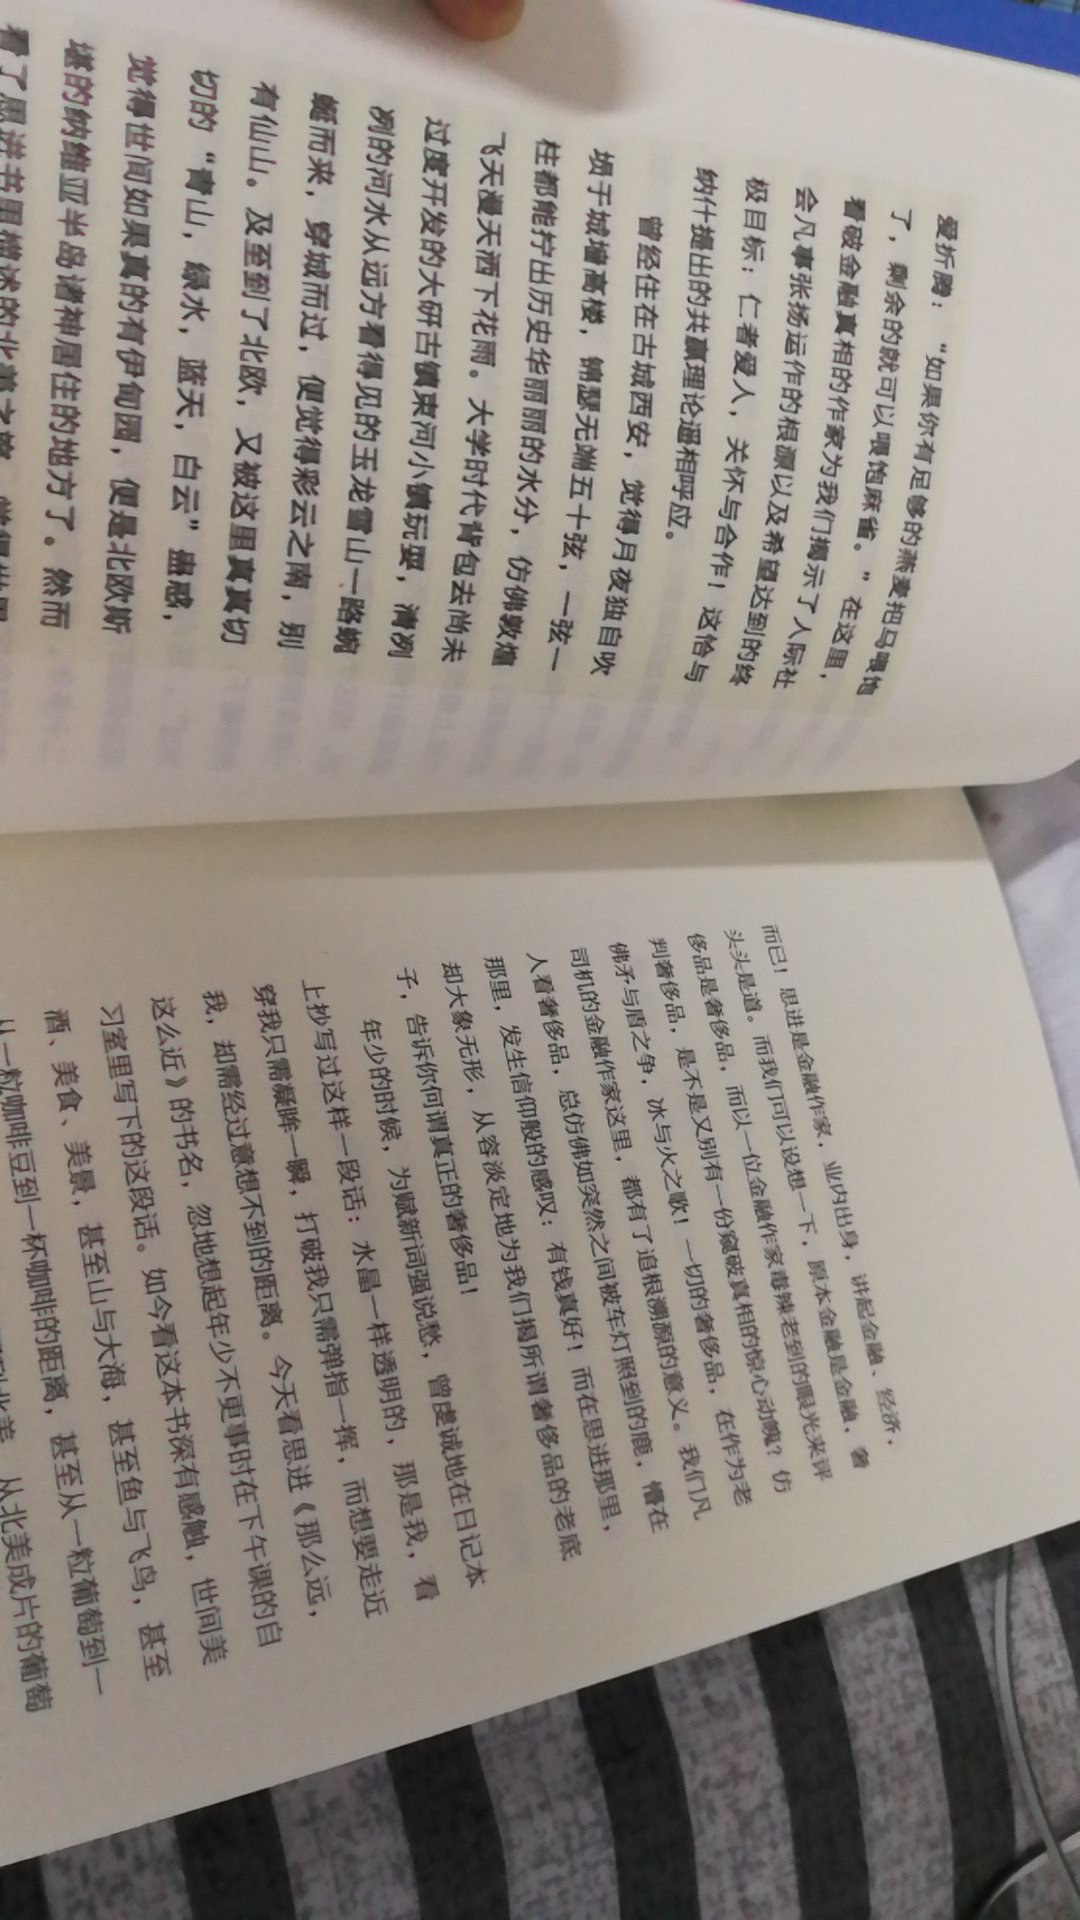 书的内容挺有趣的，有些新鲜的视角，但是这个印刷有点问题，左边那页和右边那页明显颜色，字迹不一样，左边的字有点重影模糊，感觉不是正版书啊。